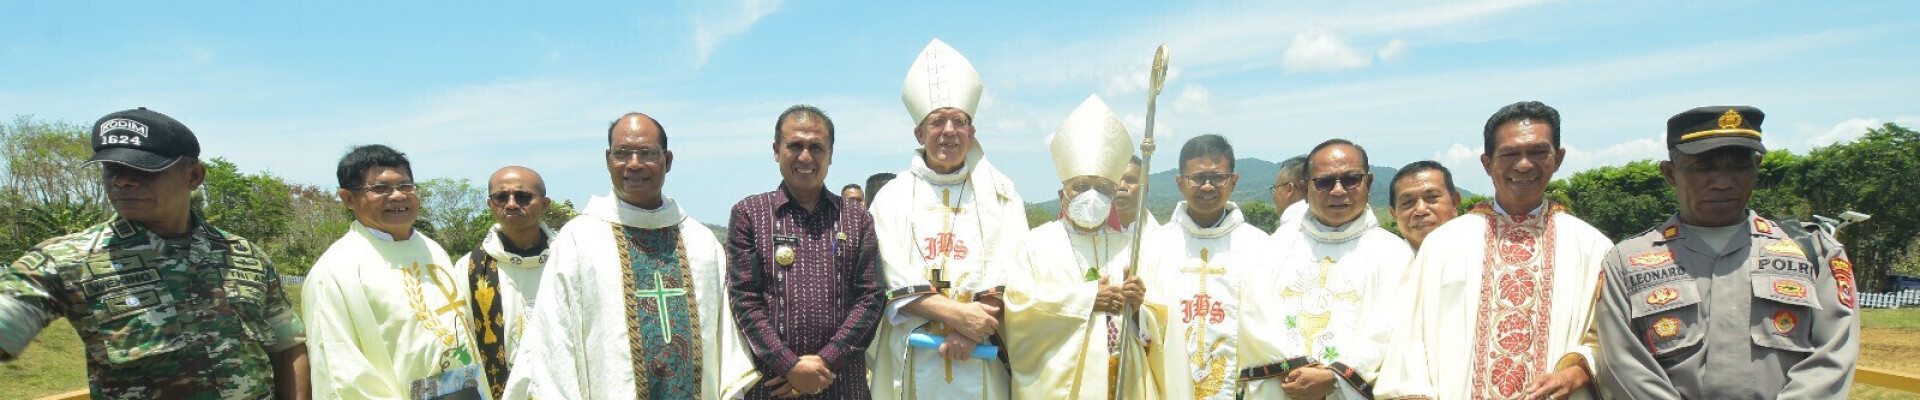 Abt Isaac bezocht Indonesië